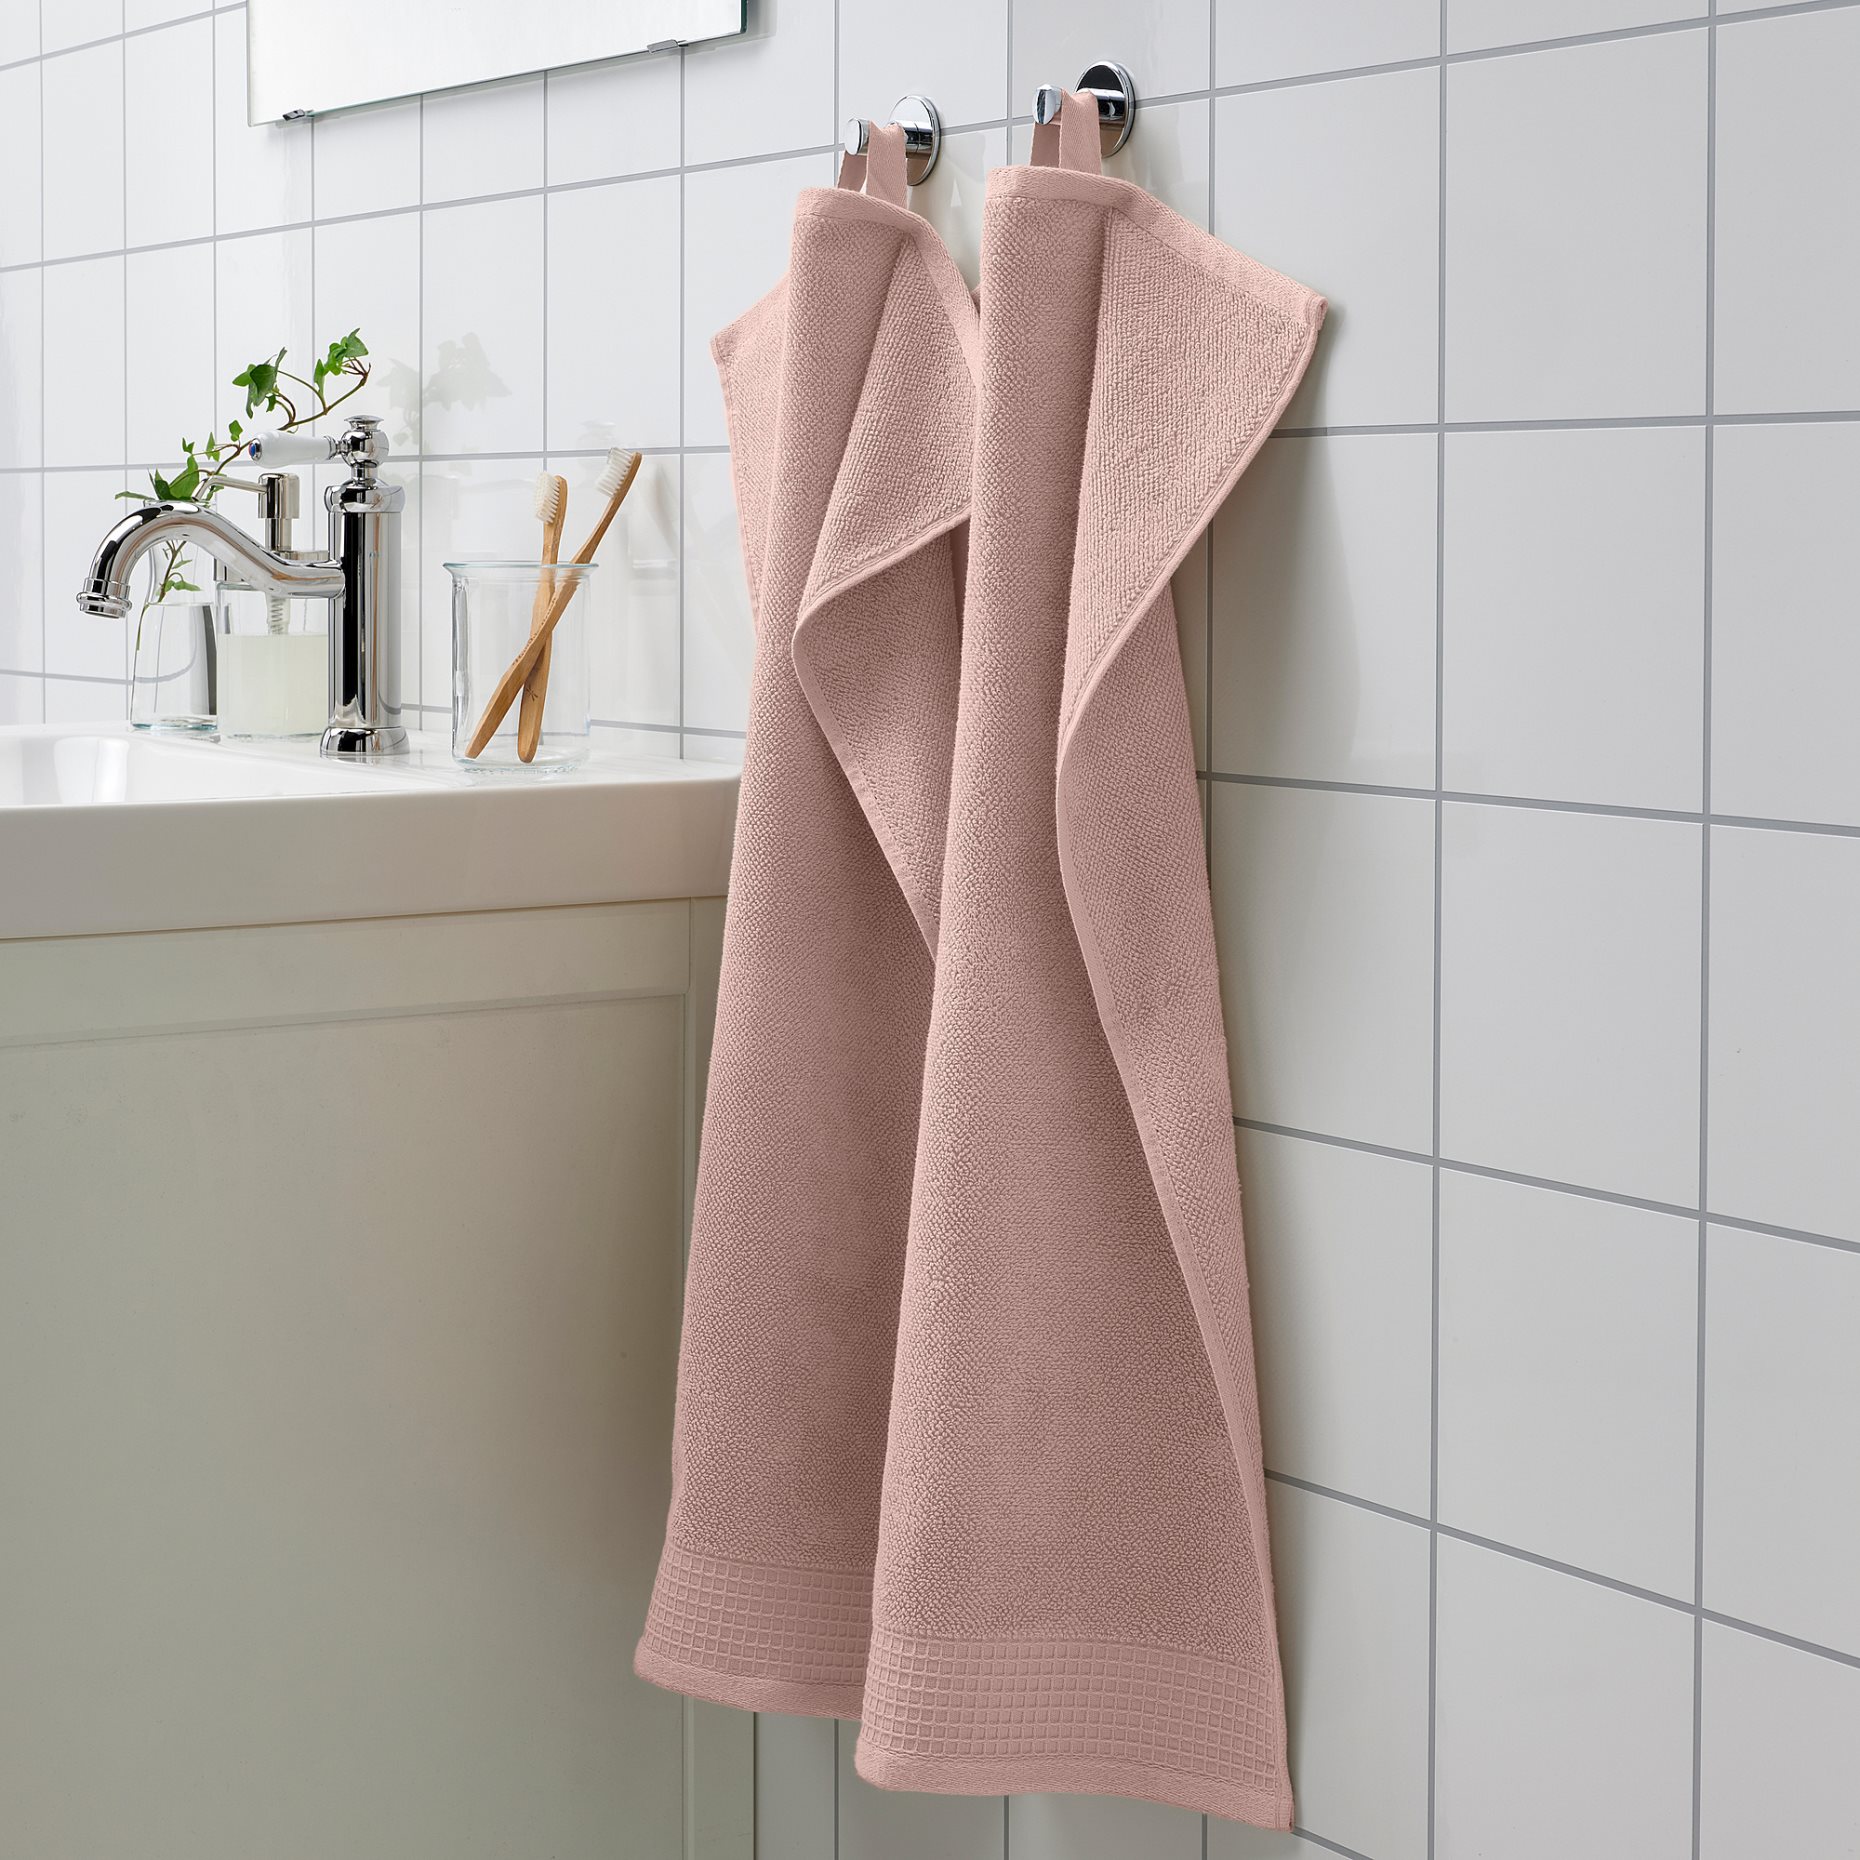 VINARN, hand towel, 40x70 cm, 505.212.29